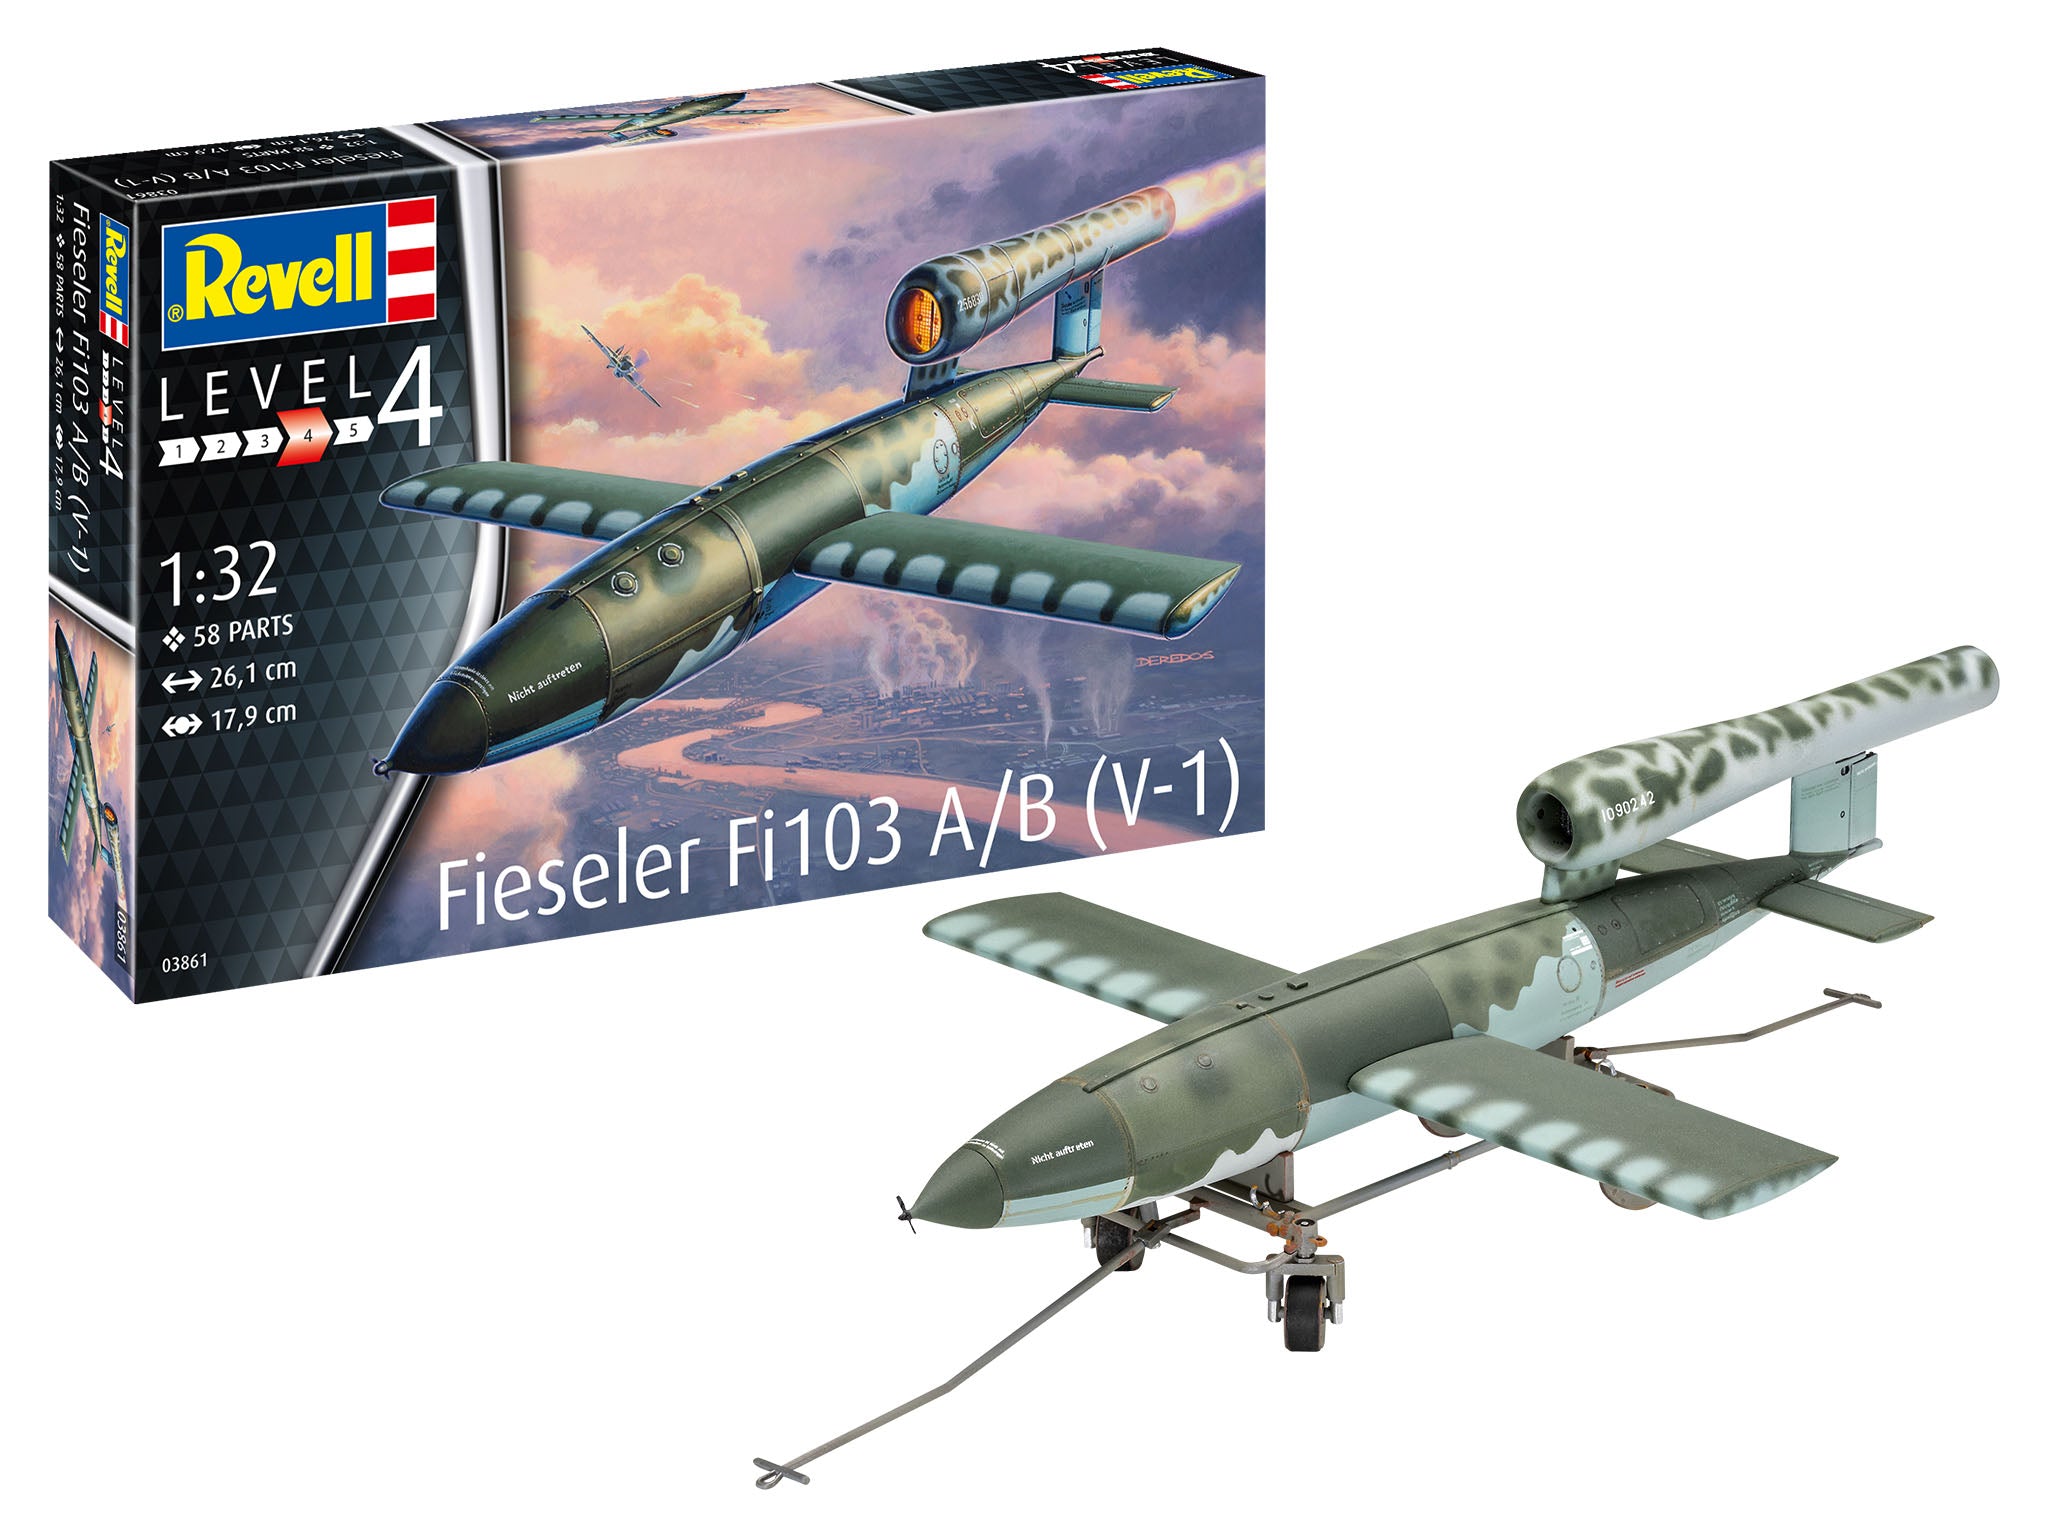 Revell Fieseler Fi103 V-1 1:32 Plane Model Kit